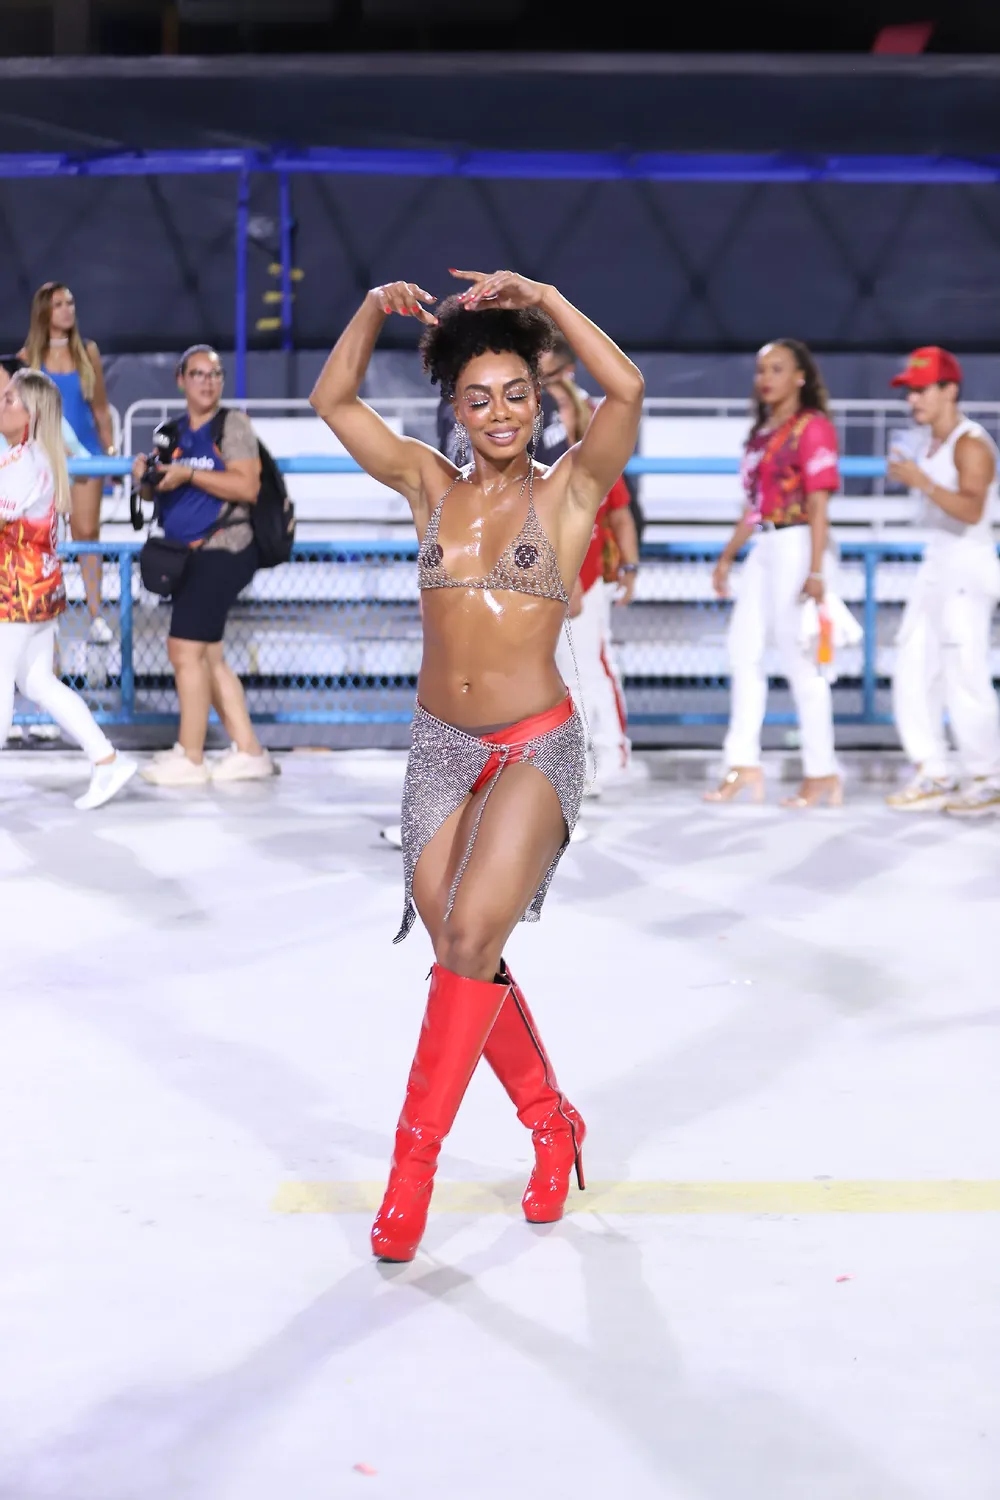 Dandara Mariana Perde Vestido Durante Ensaio De Samba E Mostra Intimidade